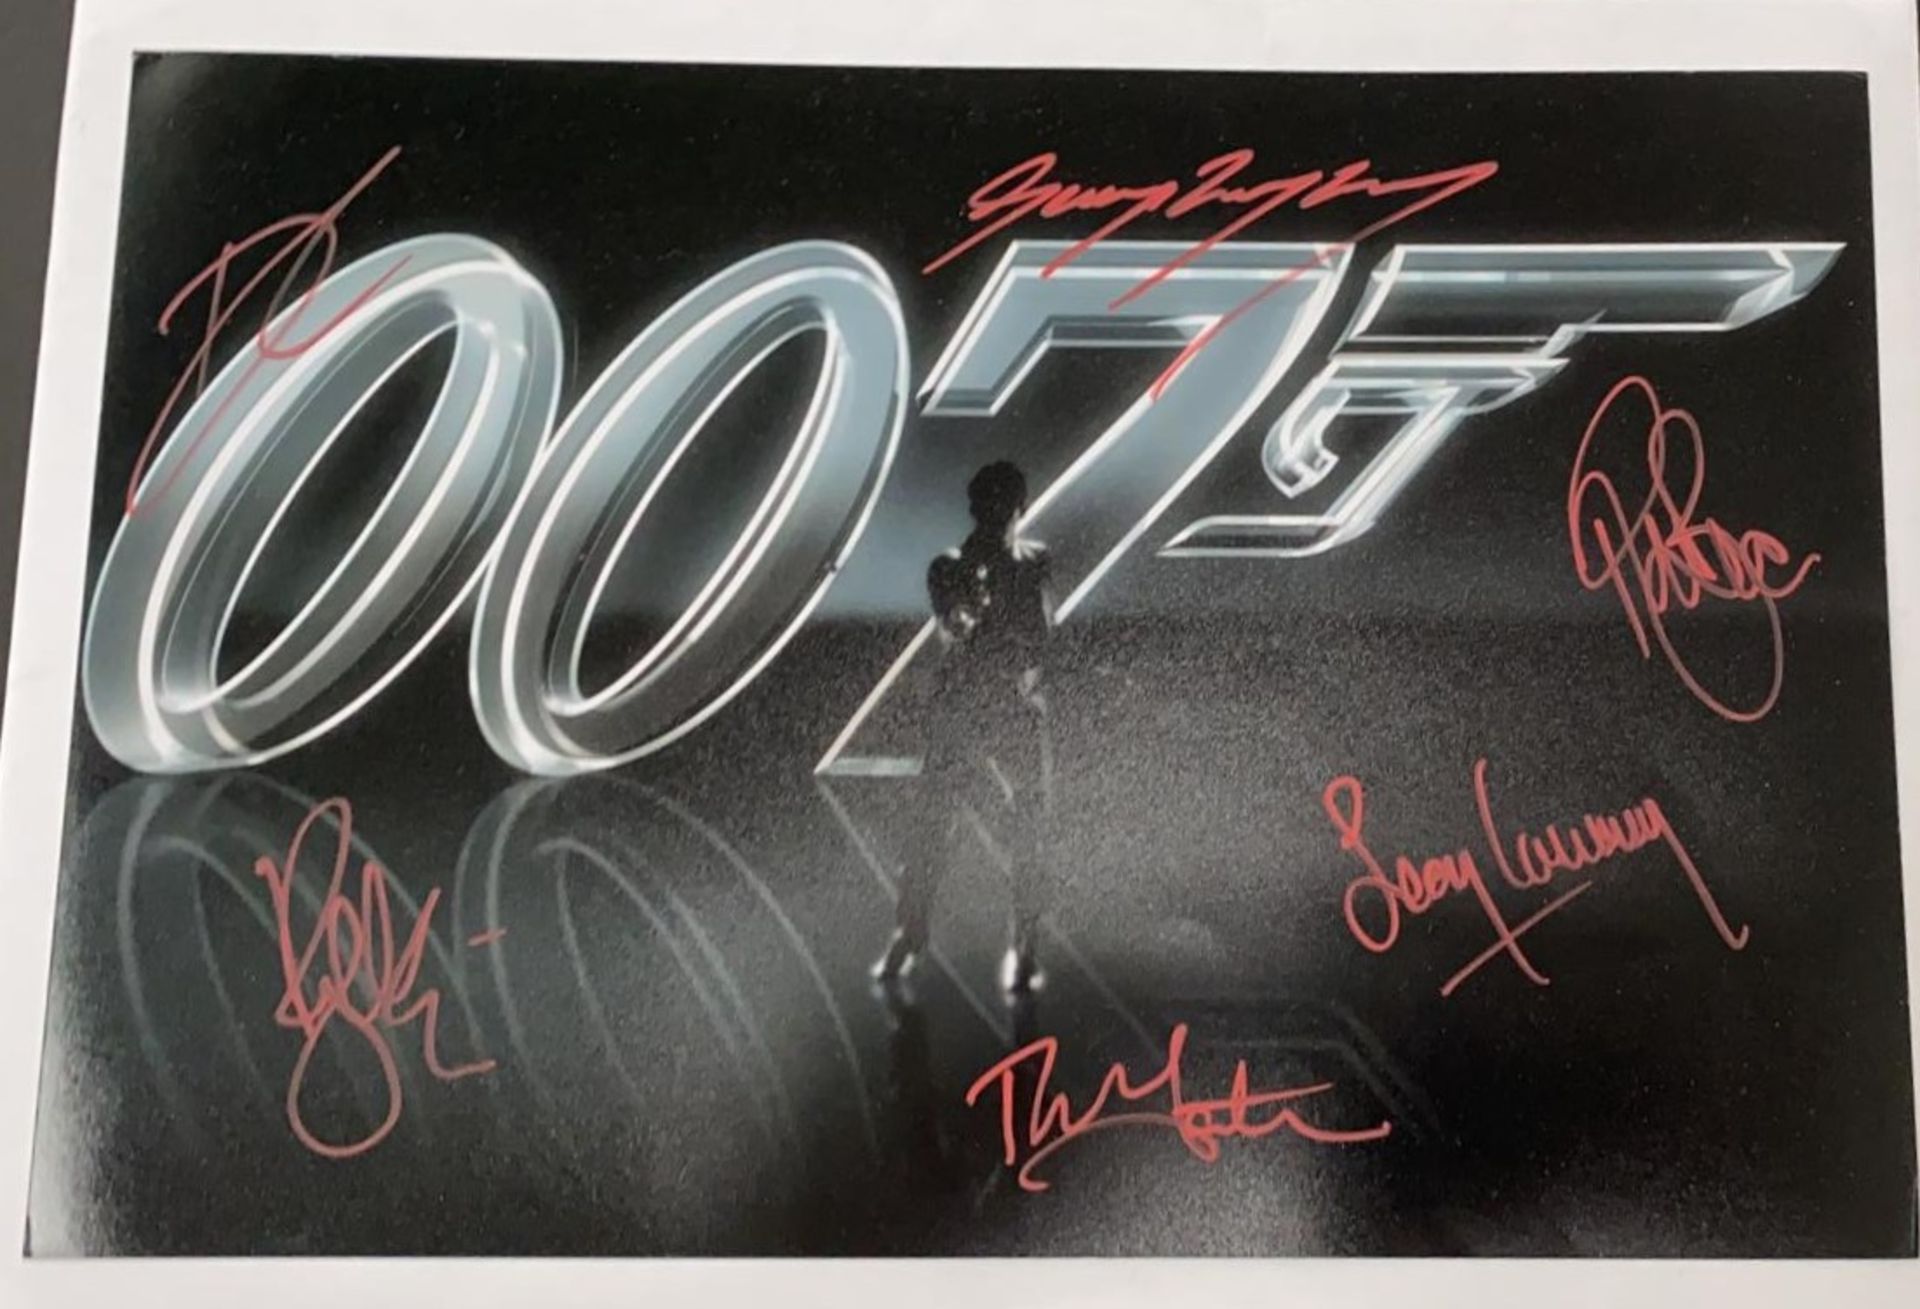 1 x Signed Autograph Picture - JAMES BOND 007 - Multi Cast James Bond Autographs By 6 James Bond - Image 3 of 5